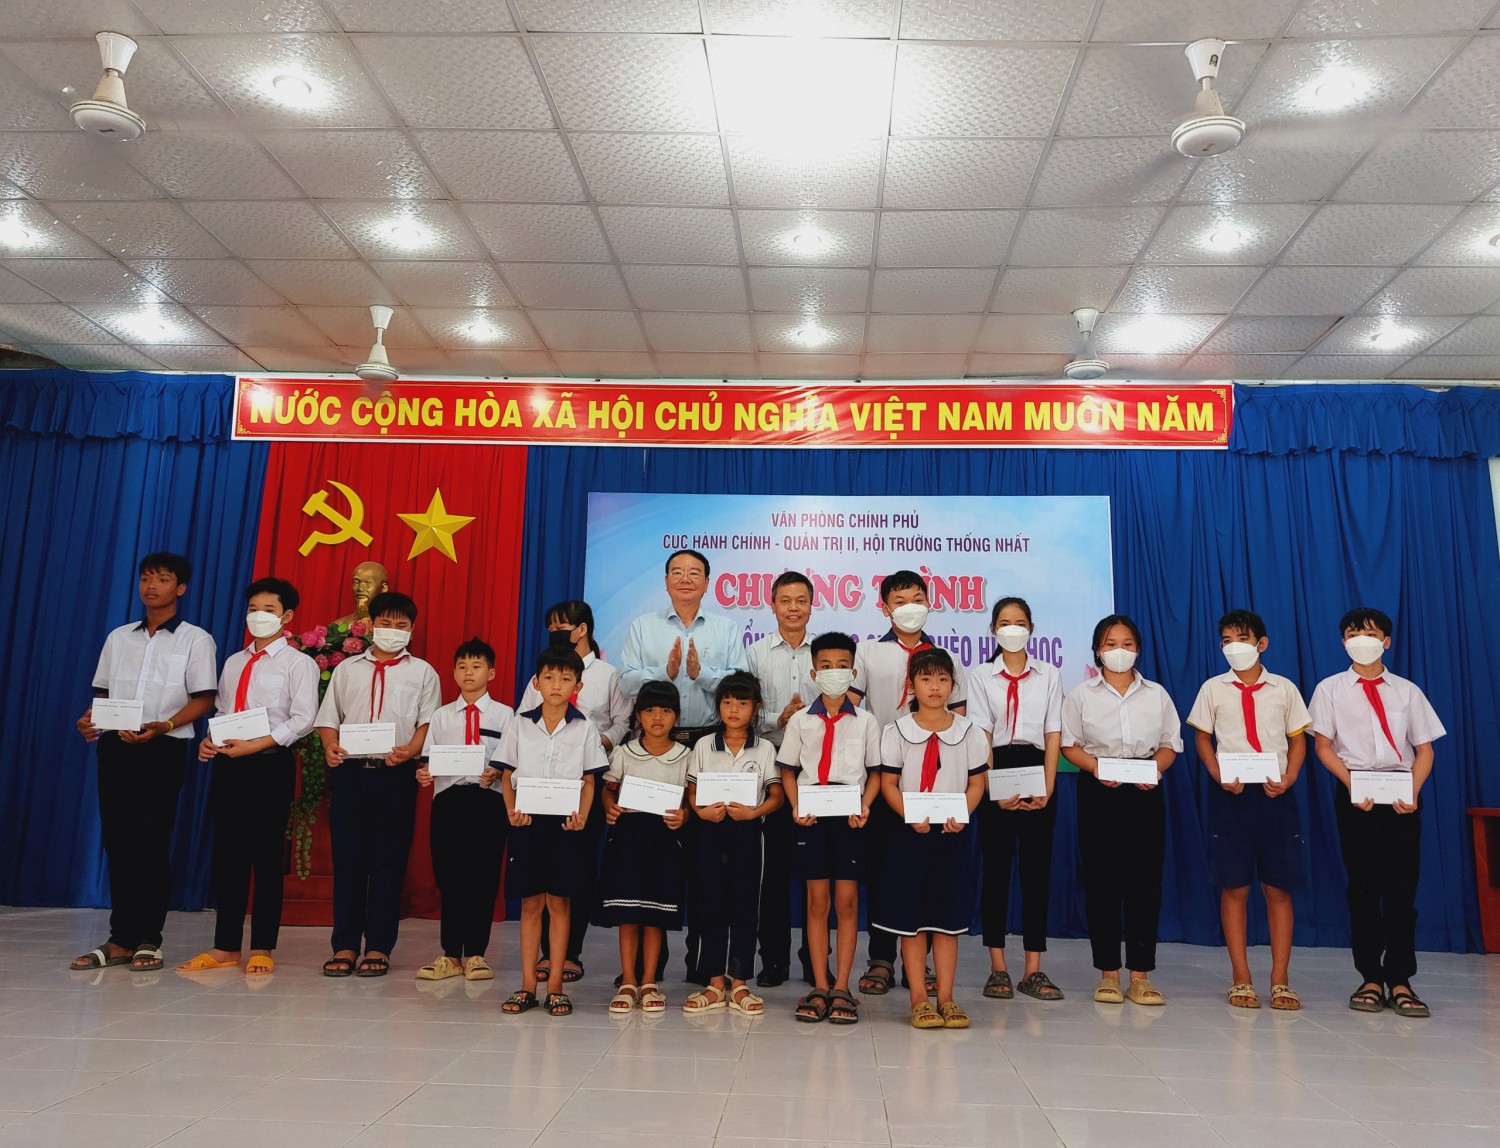 Văn phòng Chính Phủ Cục Hành Chính- Quản trị II, Hội trường Thống nhất trao tặng học bổng tại xã Tân Lập